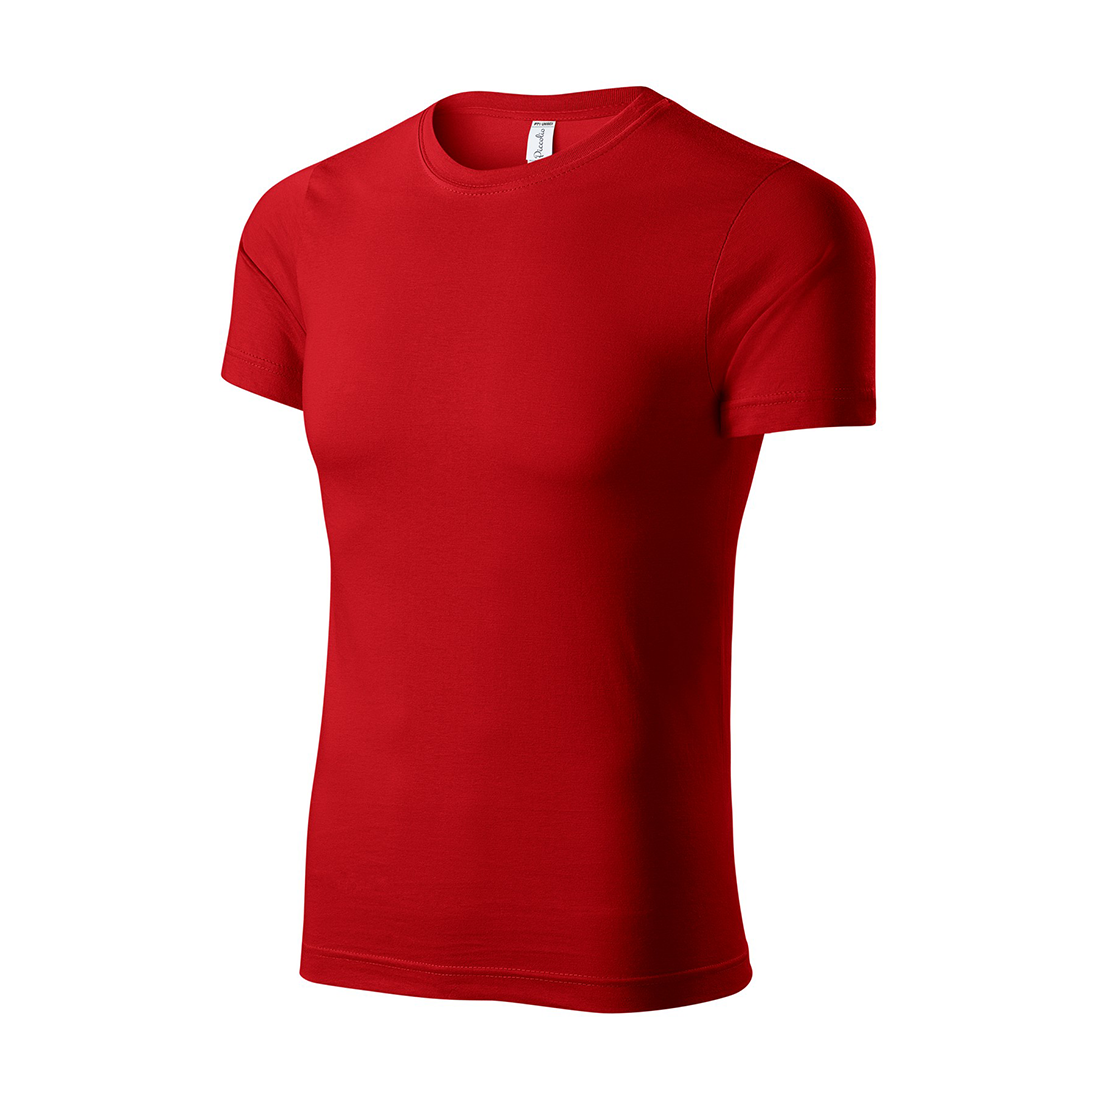 Unisex-T-Shirt aus Baumwolle - Arbeitskleidung